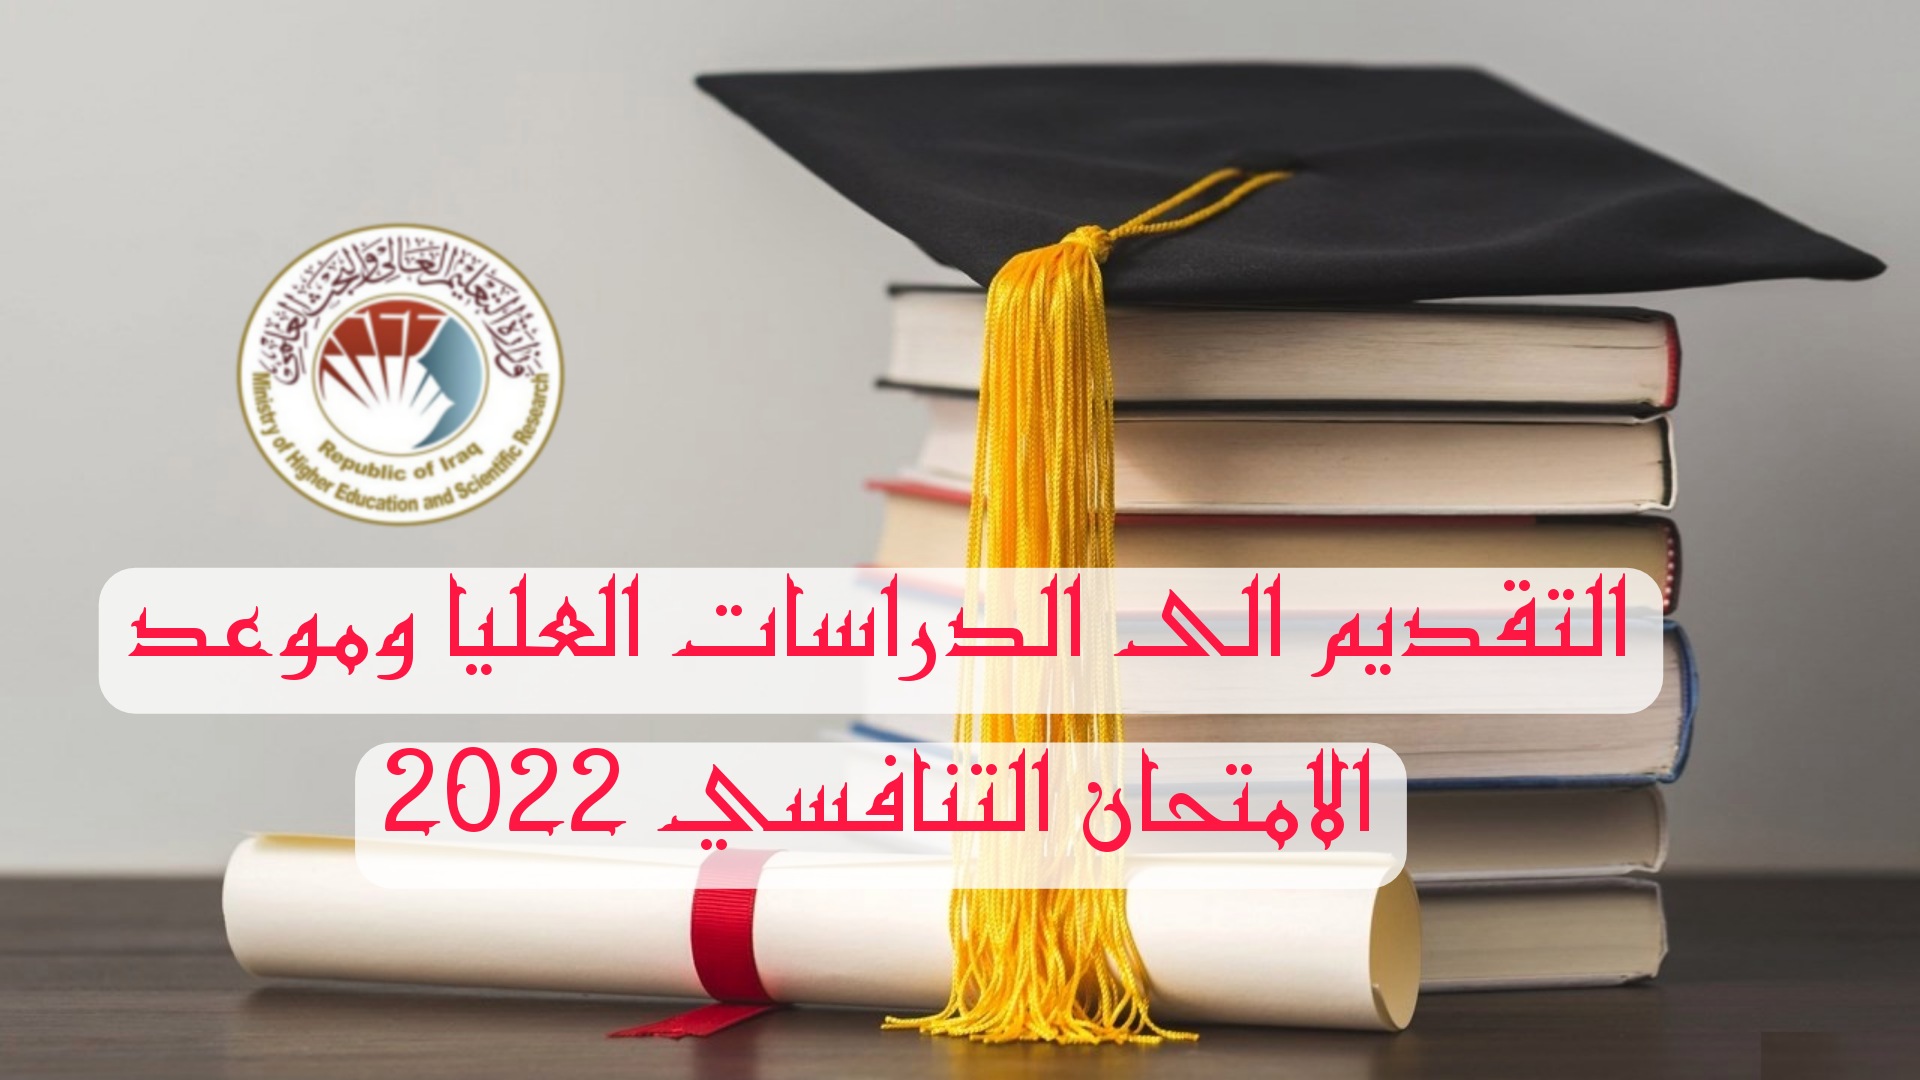 التقديم الى الدراسات العليا وموعد الامتحان التنافسي 2022